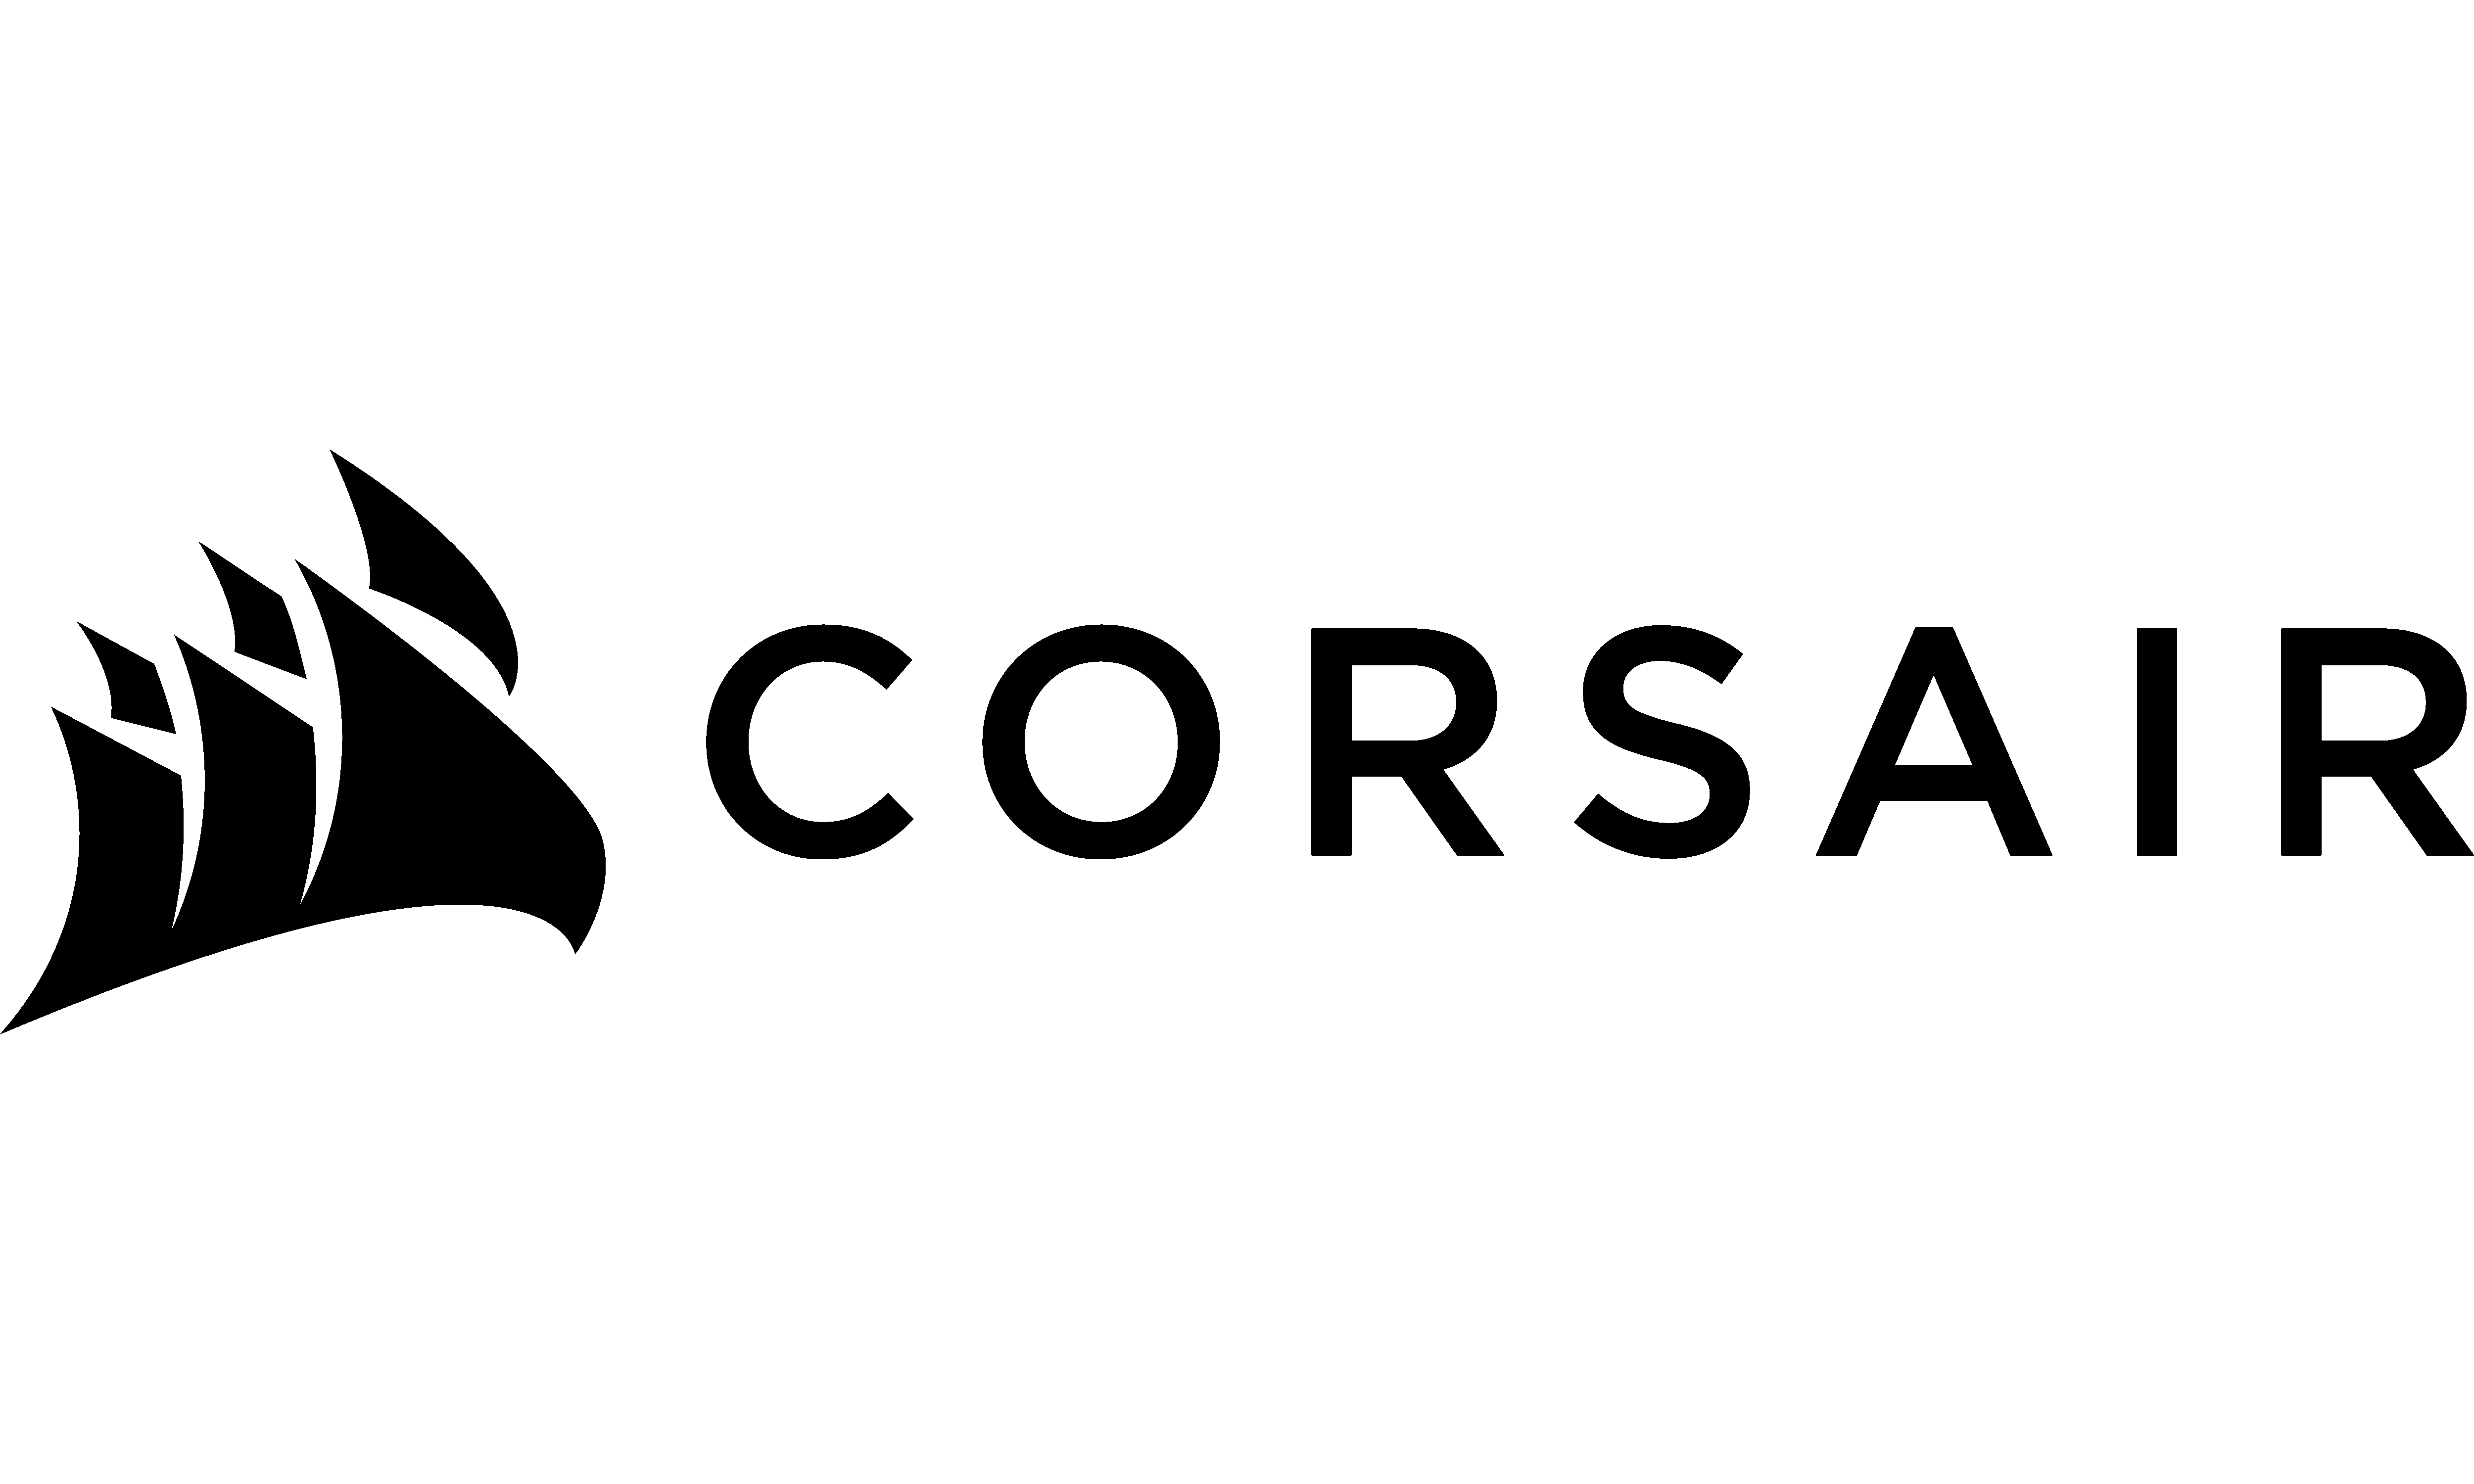 Corsair Transparent Images